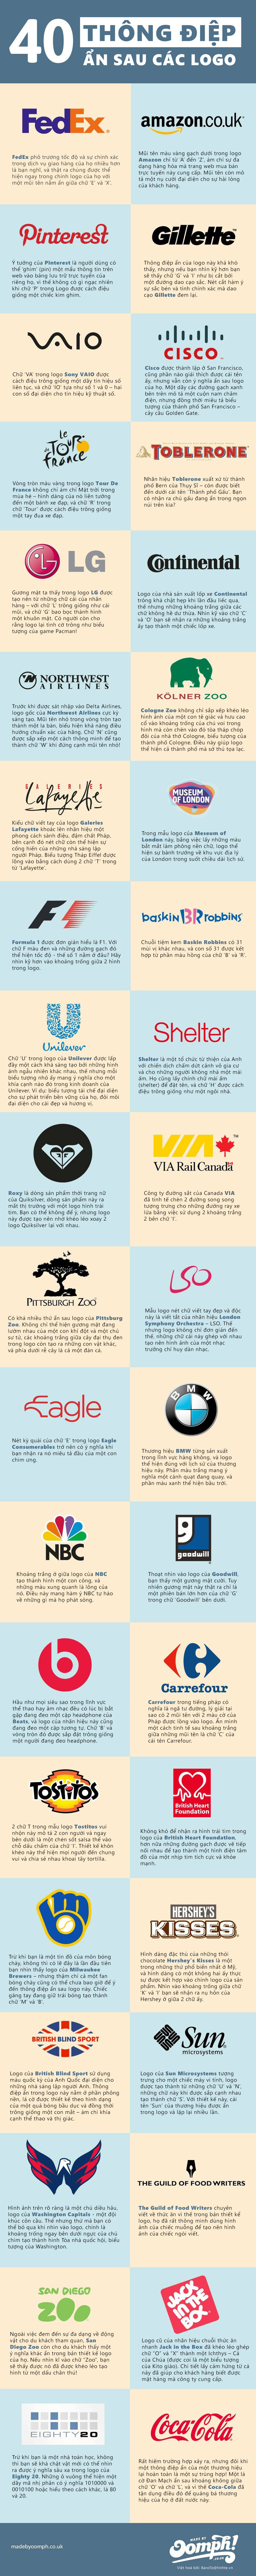 [Infographic] 40 logo ẩn chứa thông điệp doanh nghiệp 2